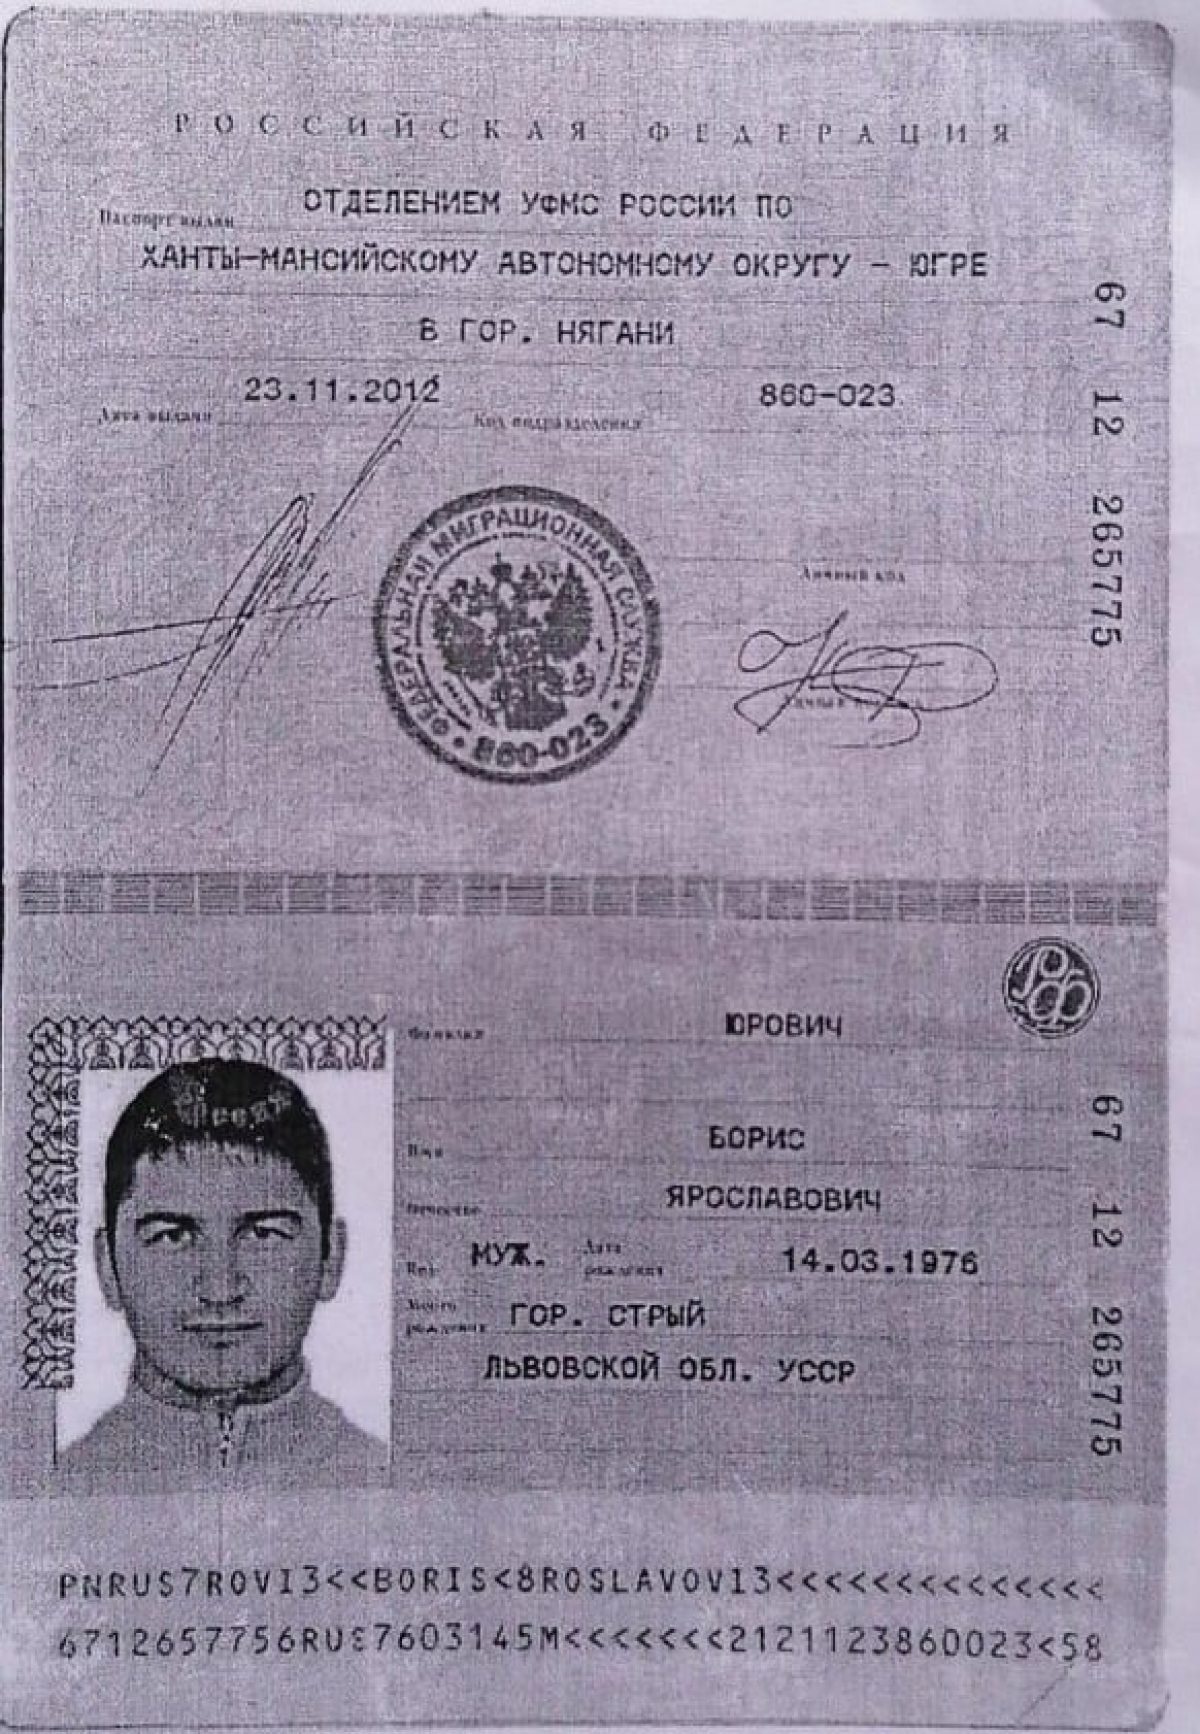 Данные российского паспорта